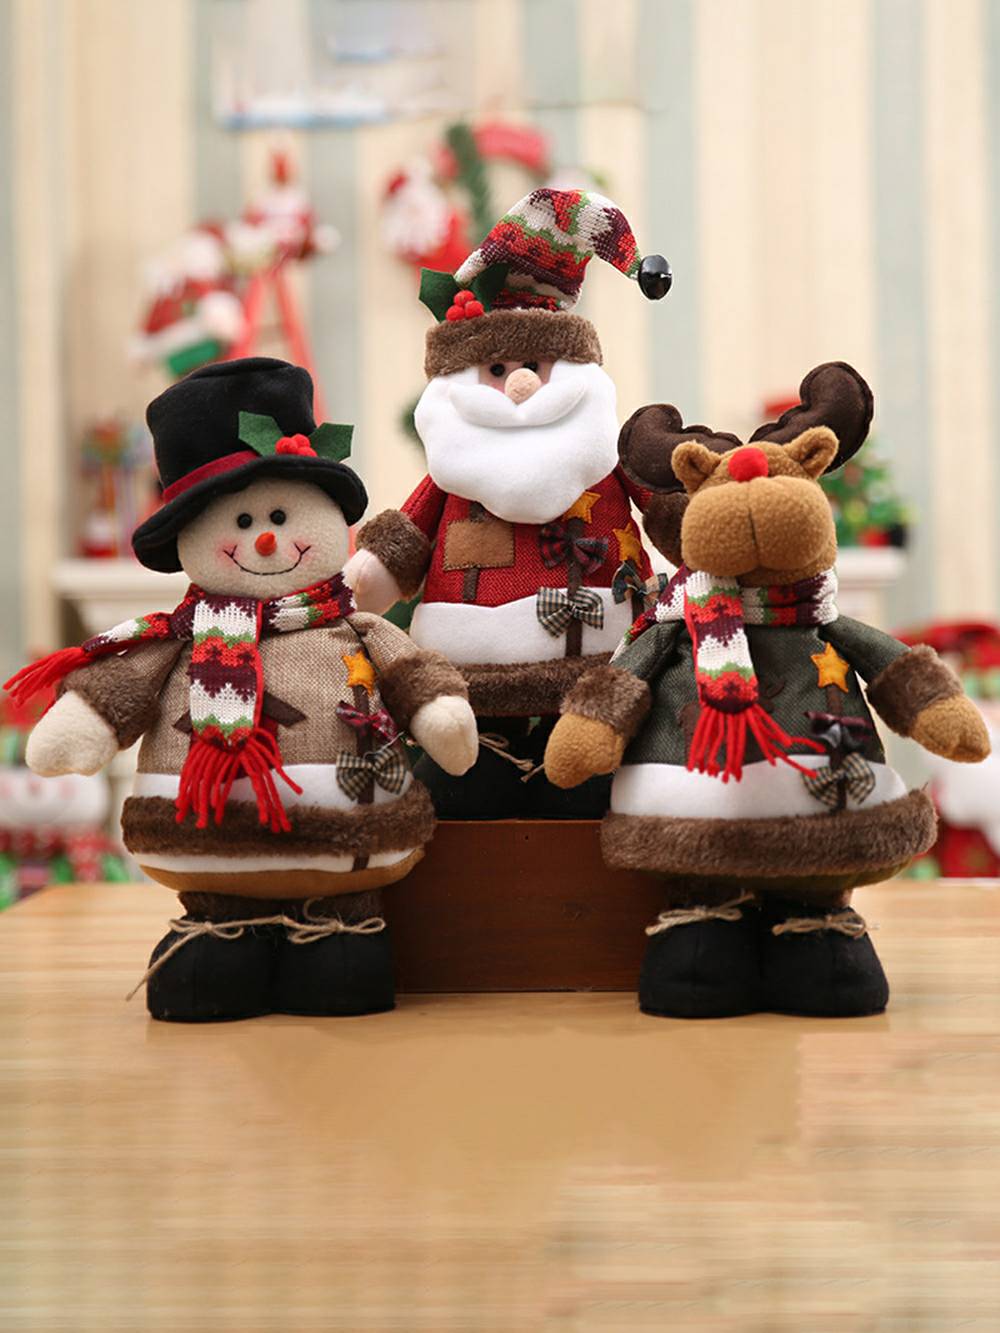 Christmas Snowman Elg Gammel mann stående figur ornament dekorasjon